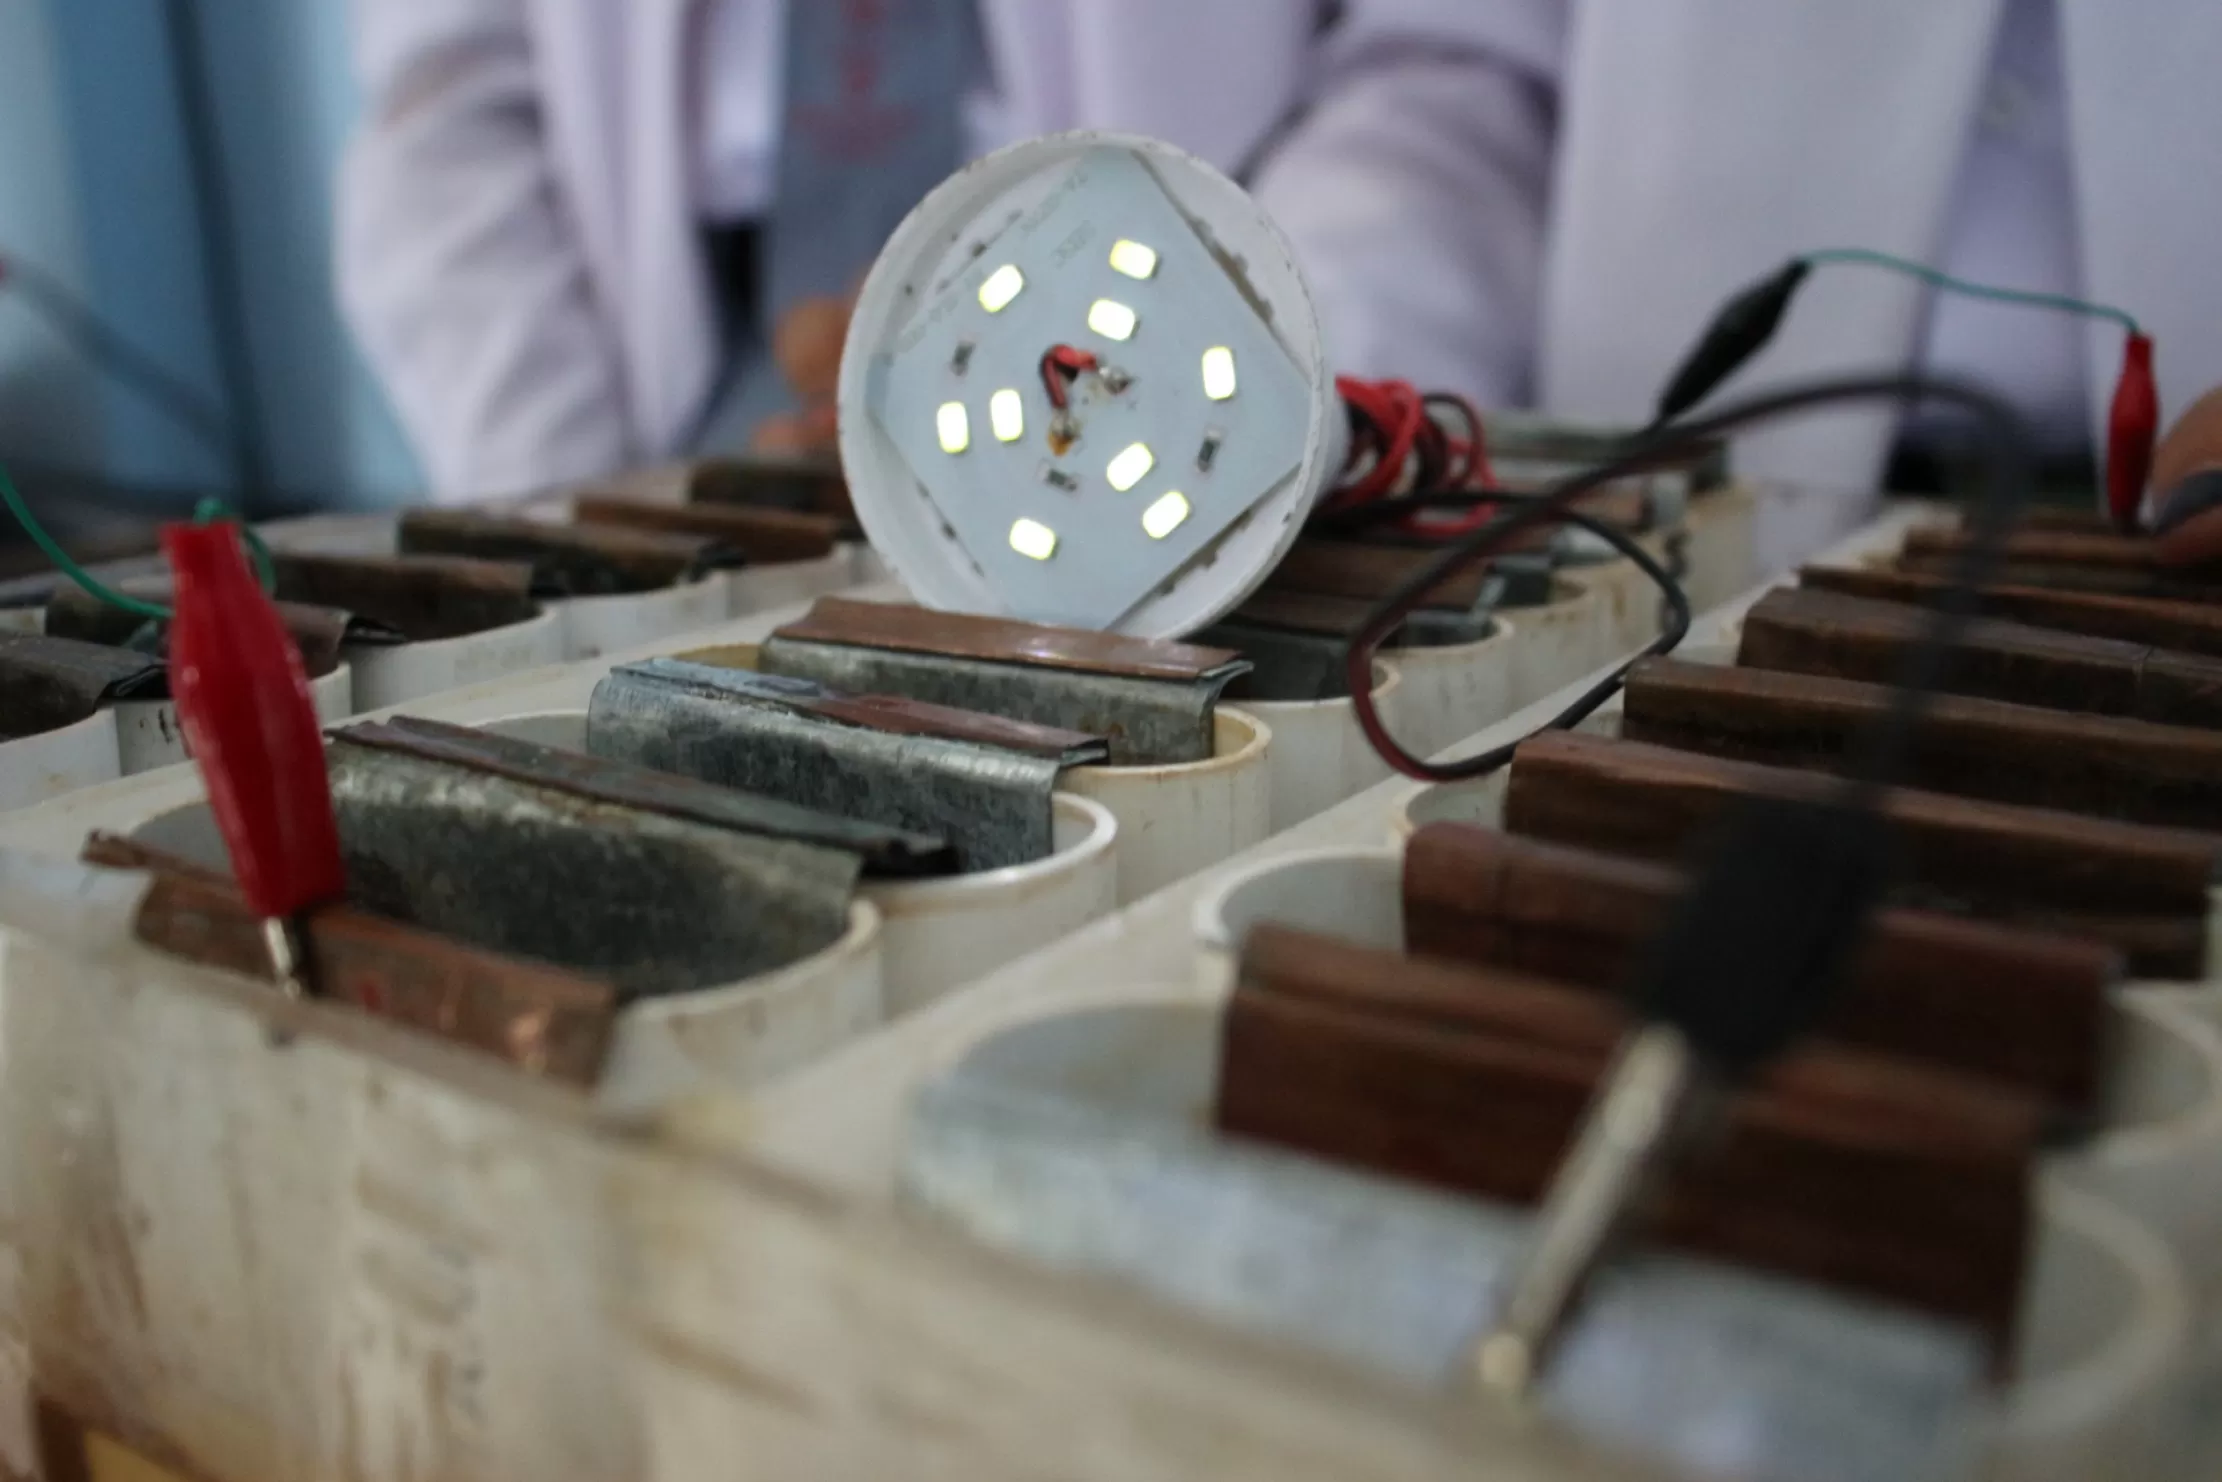 Sejak 2016 Sekolah Menengah Atas Negeri (SMAN) 2 Sampit melakukan penelitian air gambut maupun kulit nanas. Setelah tiga generasi berlalu, hasil penelitian mampu menyalakan bola lampu. Sumber energi listriknya mencapai 12 volt (V).